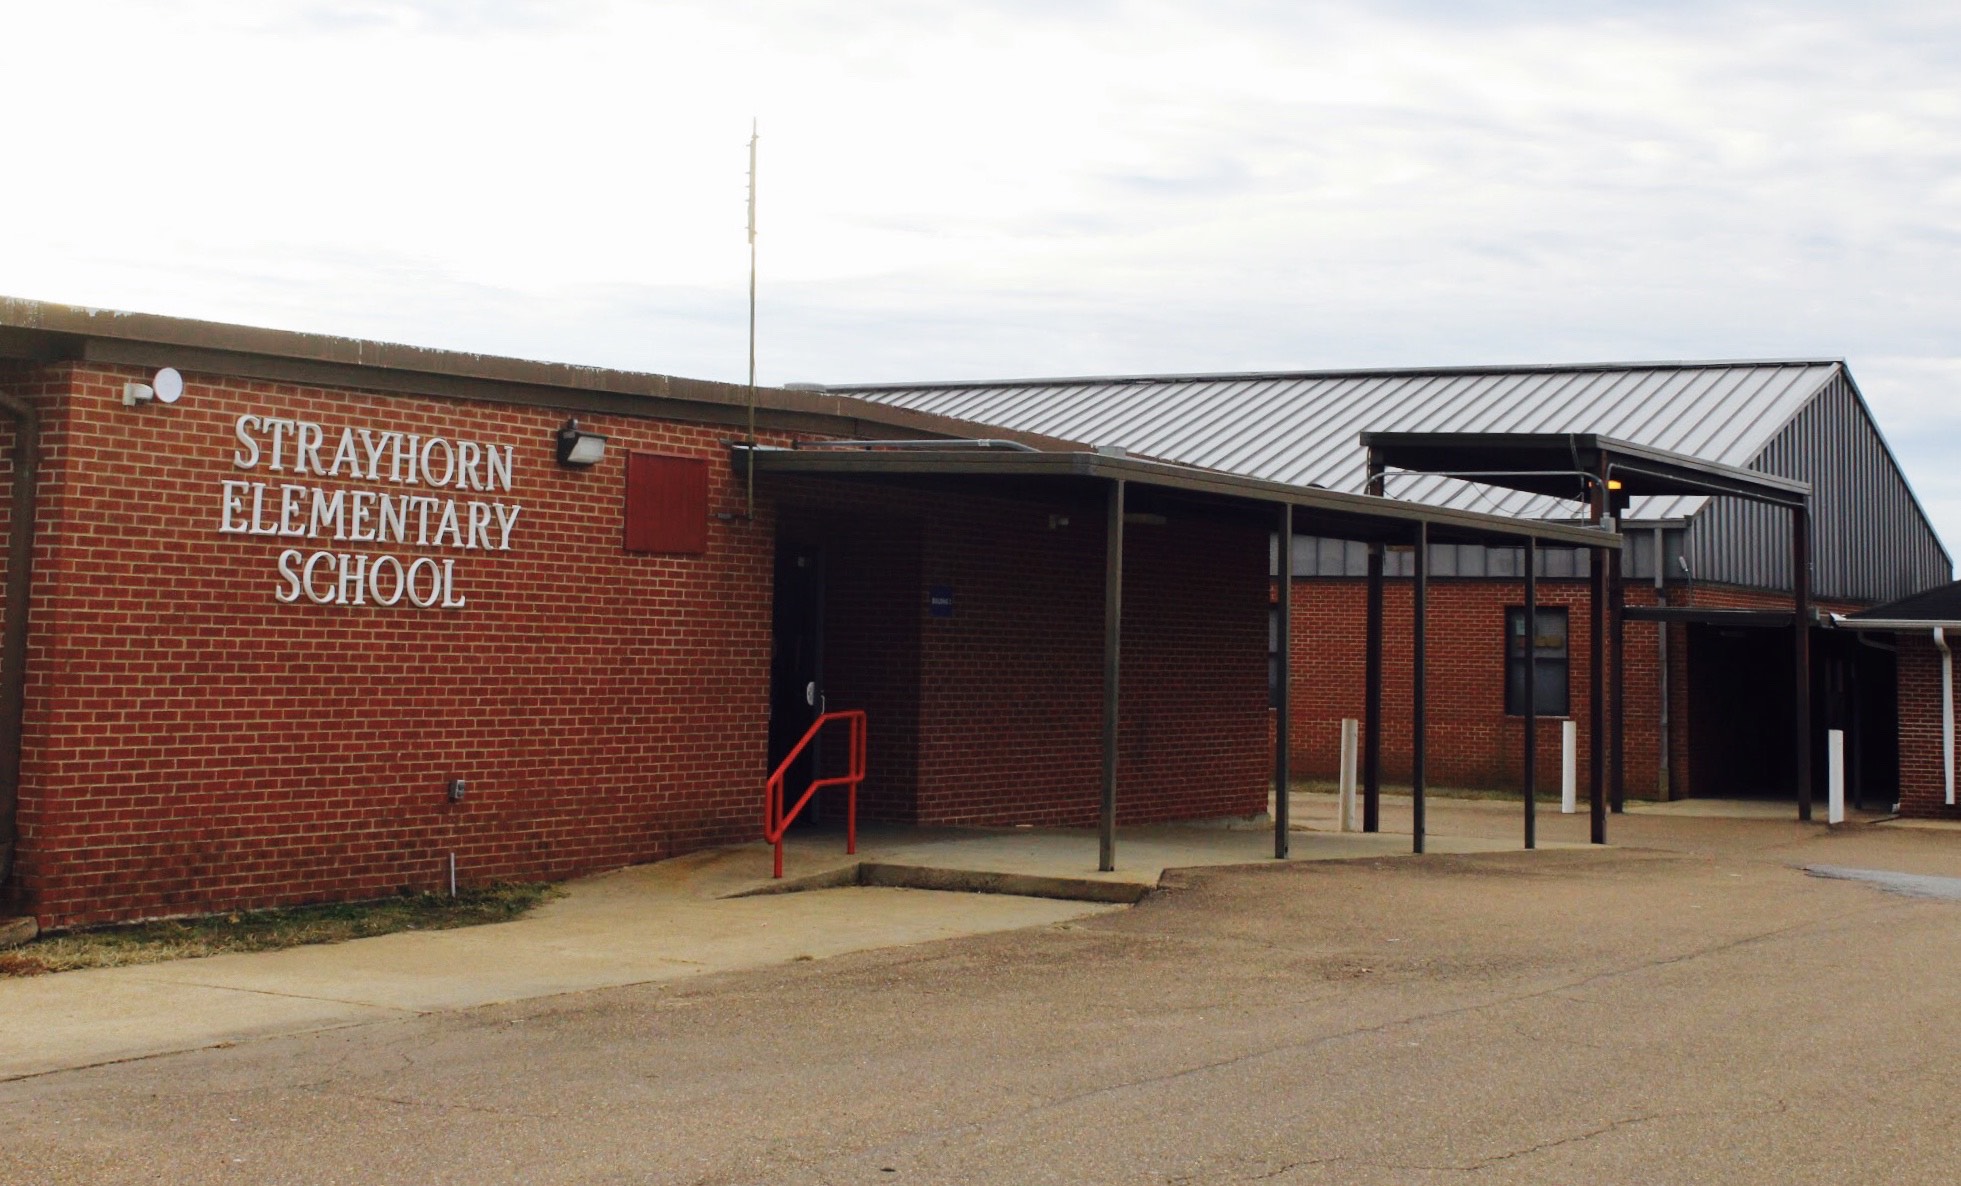 Strayhorn Elementary School